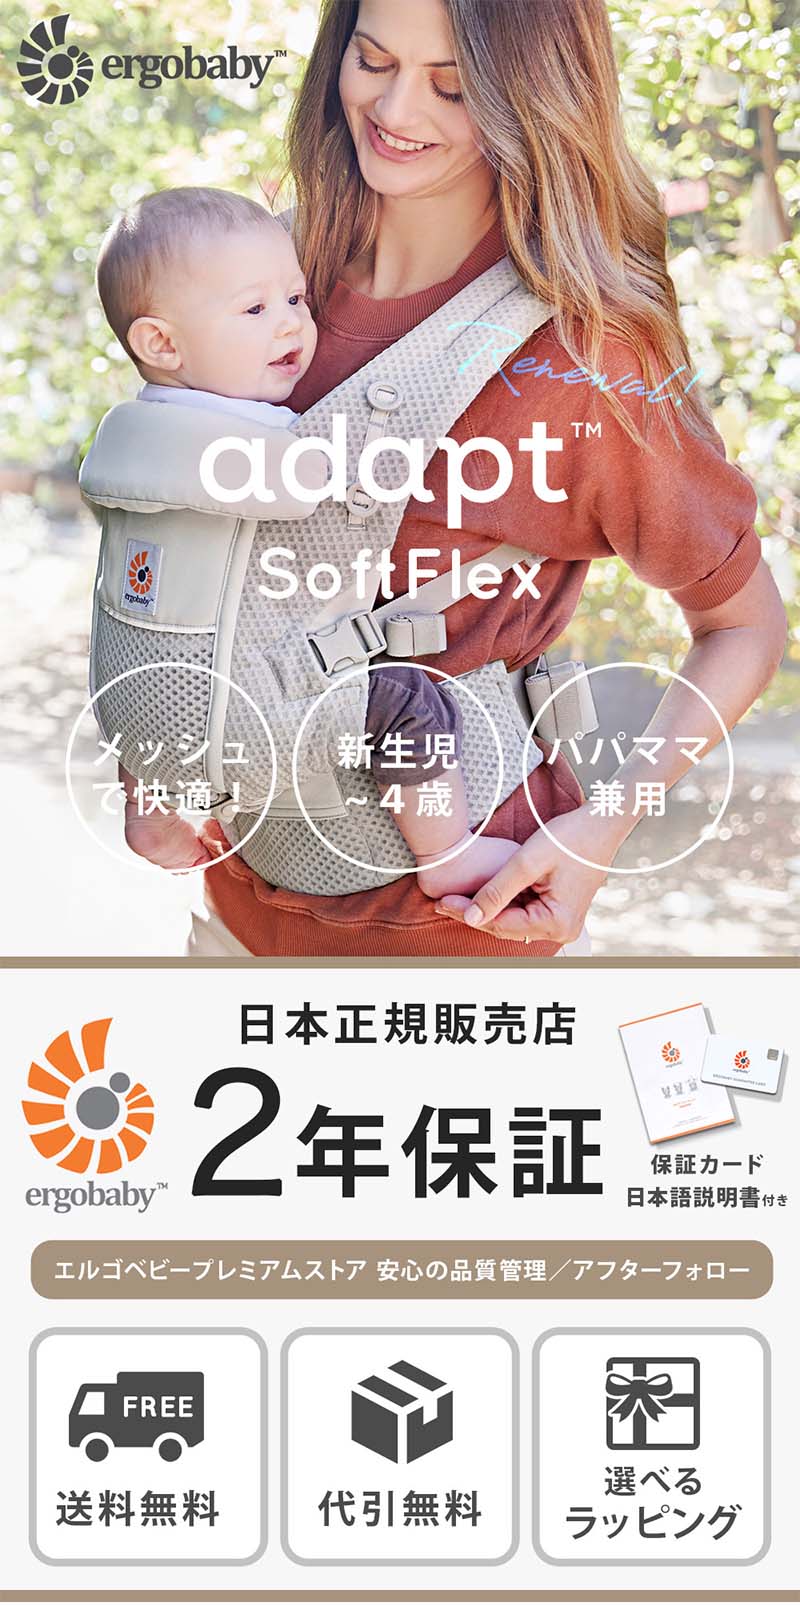 エルゴベビー アダプト ソフトフレックス | 付属品なしで新生児から20kgまで使用できるエルゴベビー 定番モデル